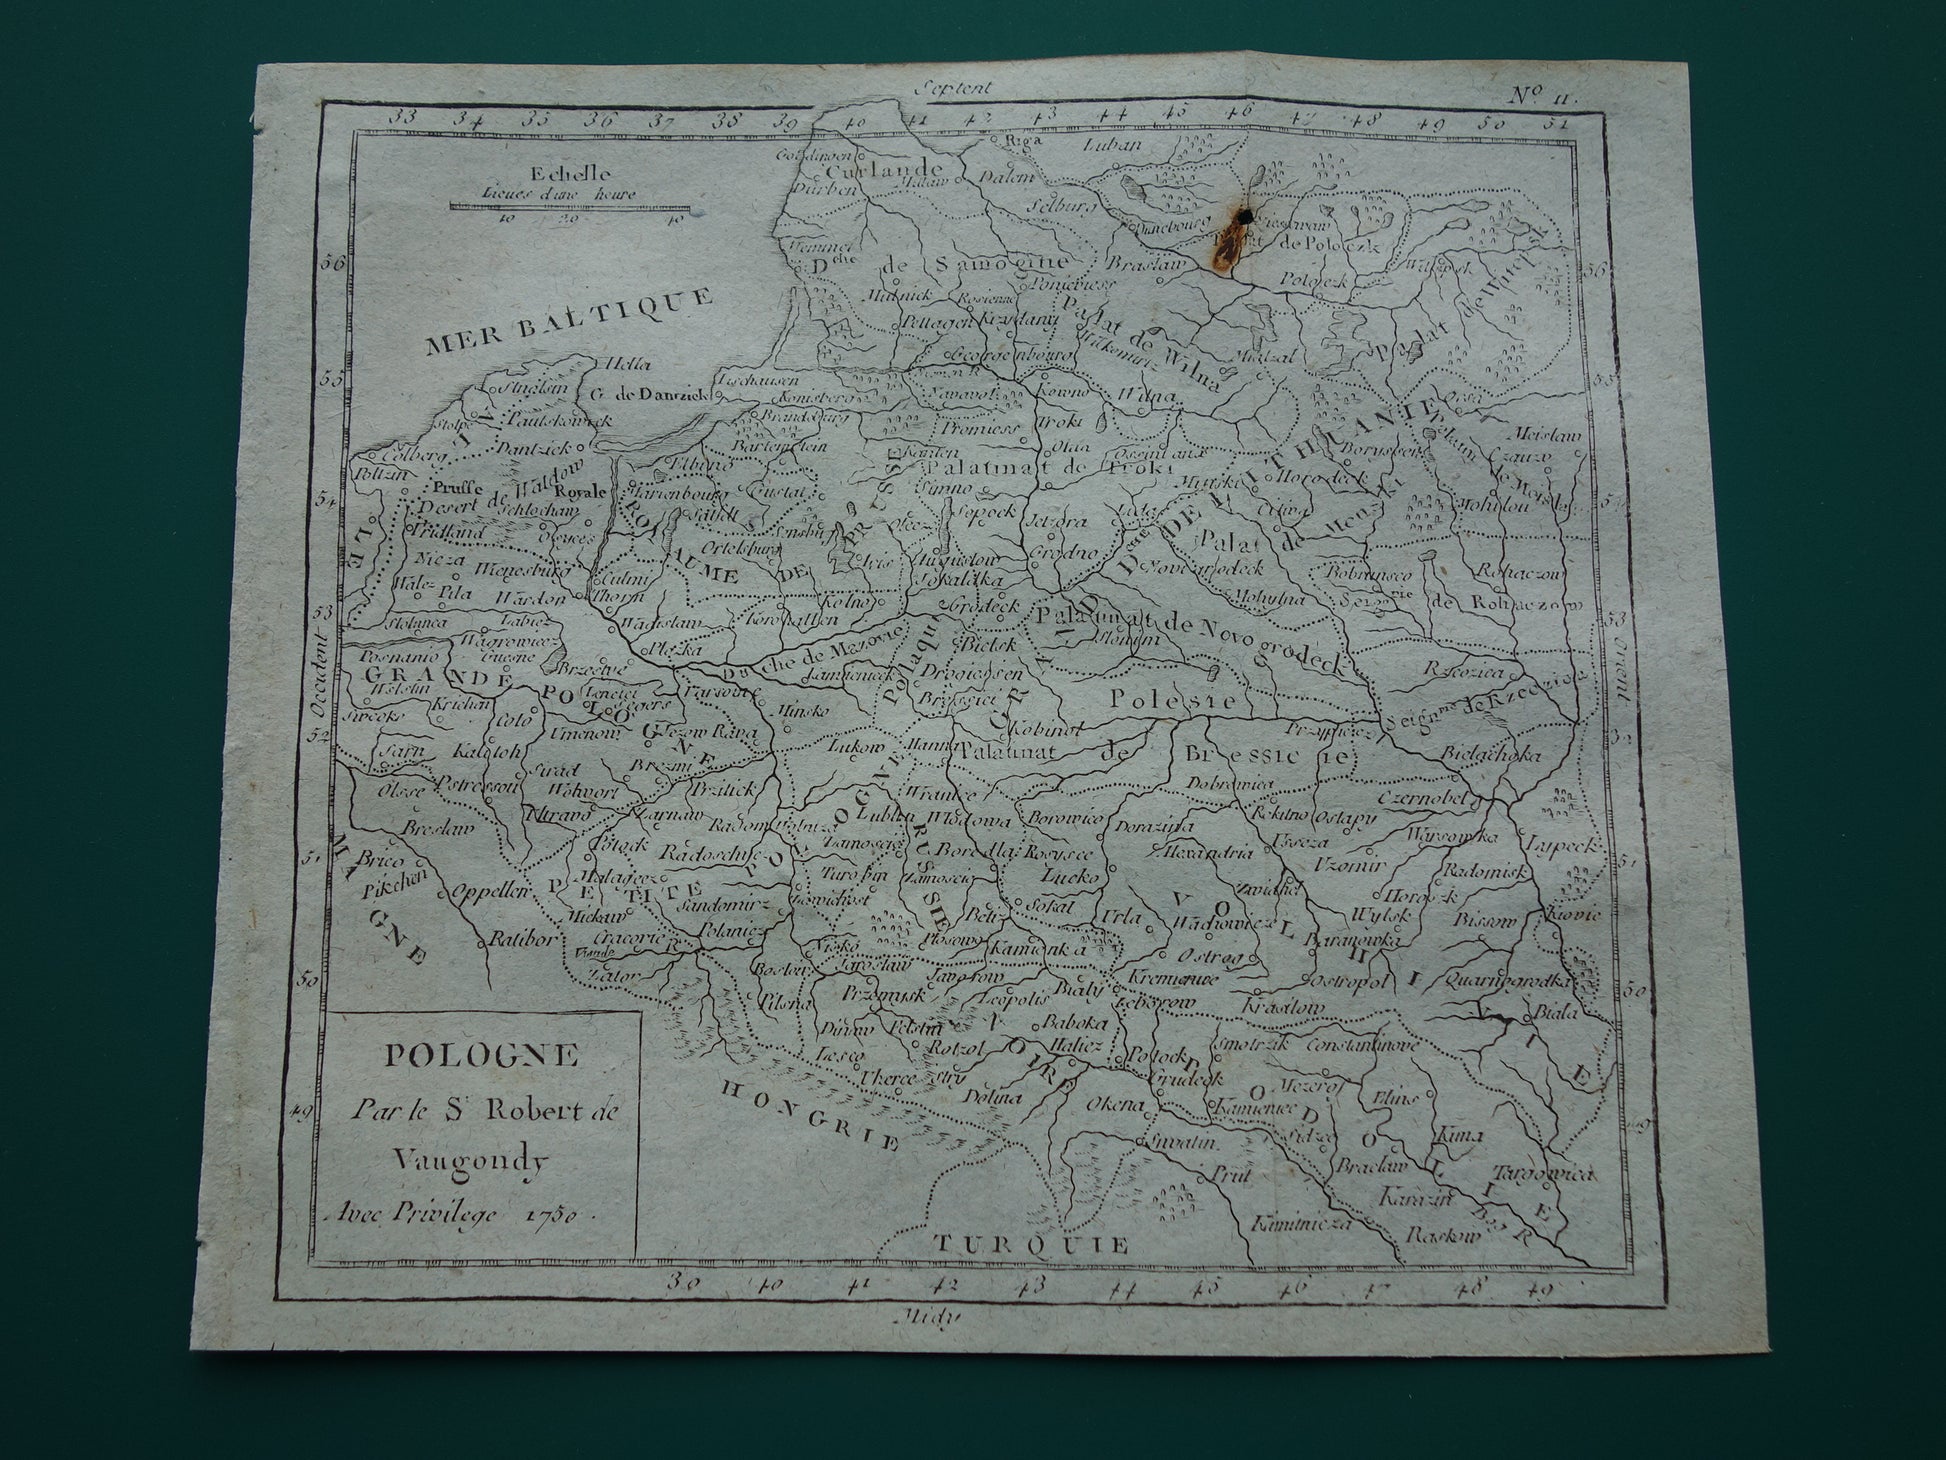 POLEN oude landkaart van Polen uit het jaar 1793 originele antieke kaart Polen klein formaat